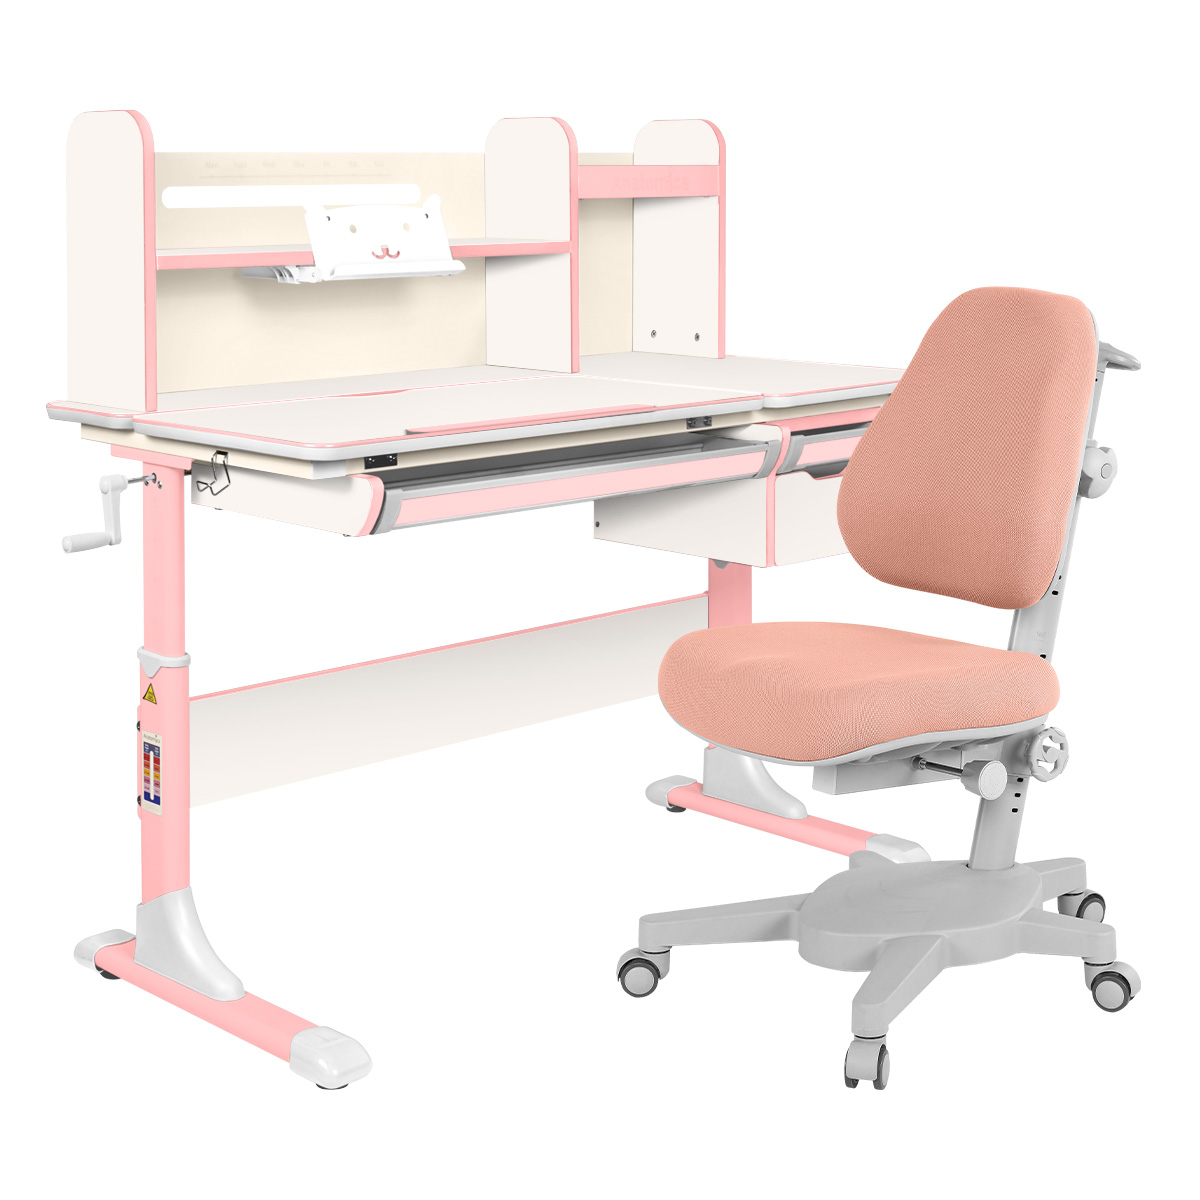 Комплект Anatomica парта Genius белый/розовый со светло-розовым креслом Armata комплект anatomica парта genius белый серый с мятным креслом armata